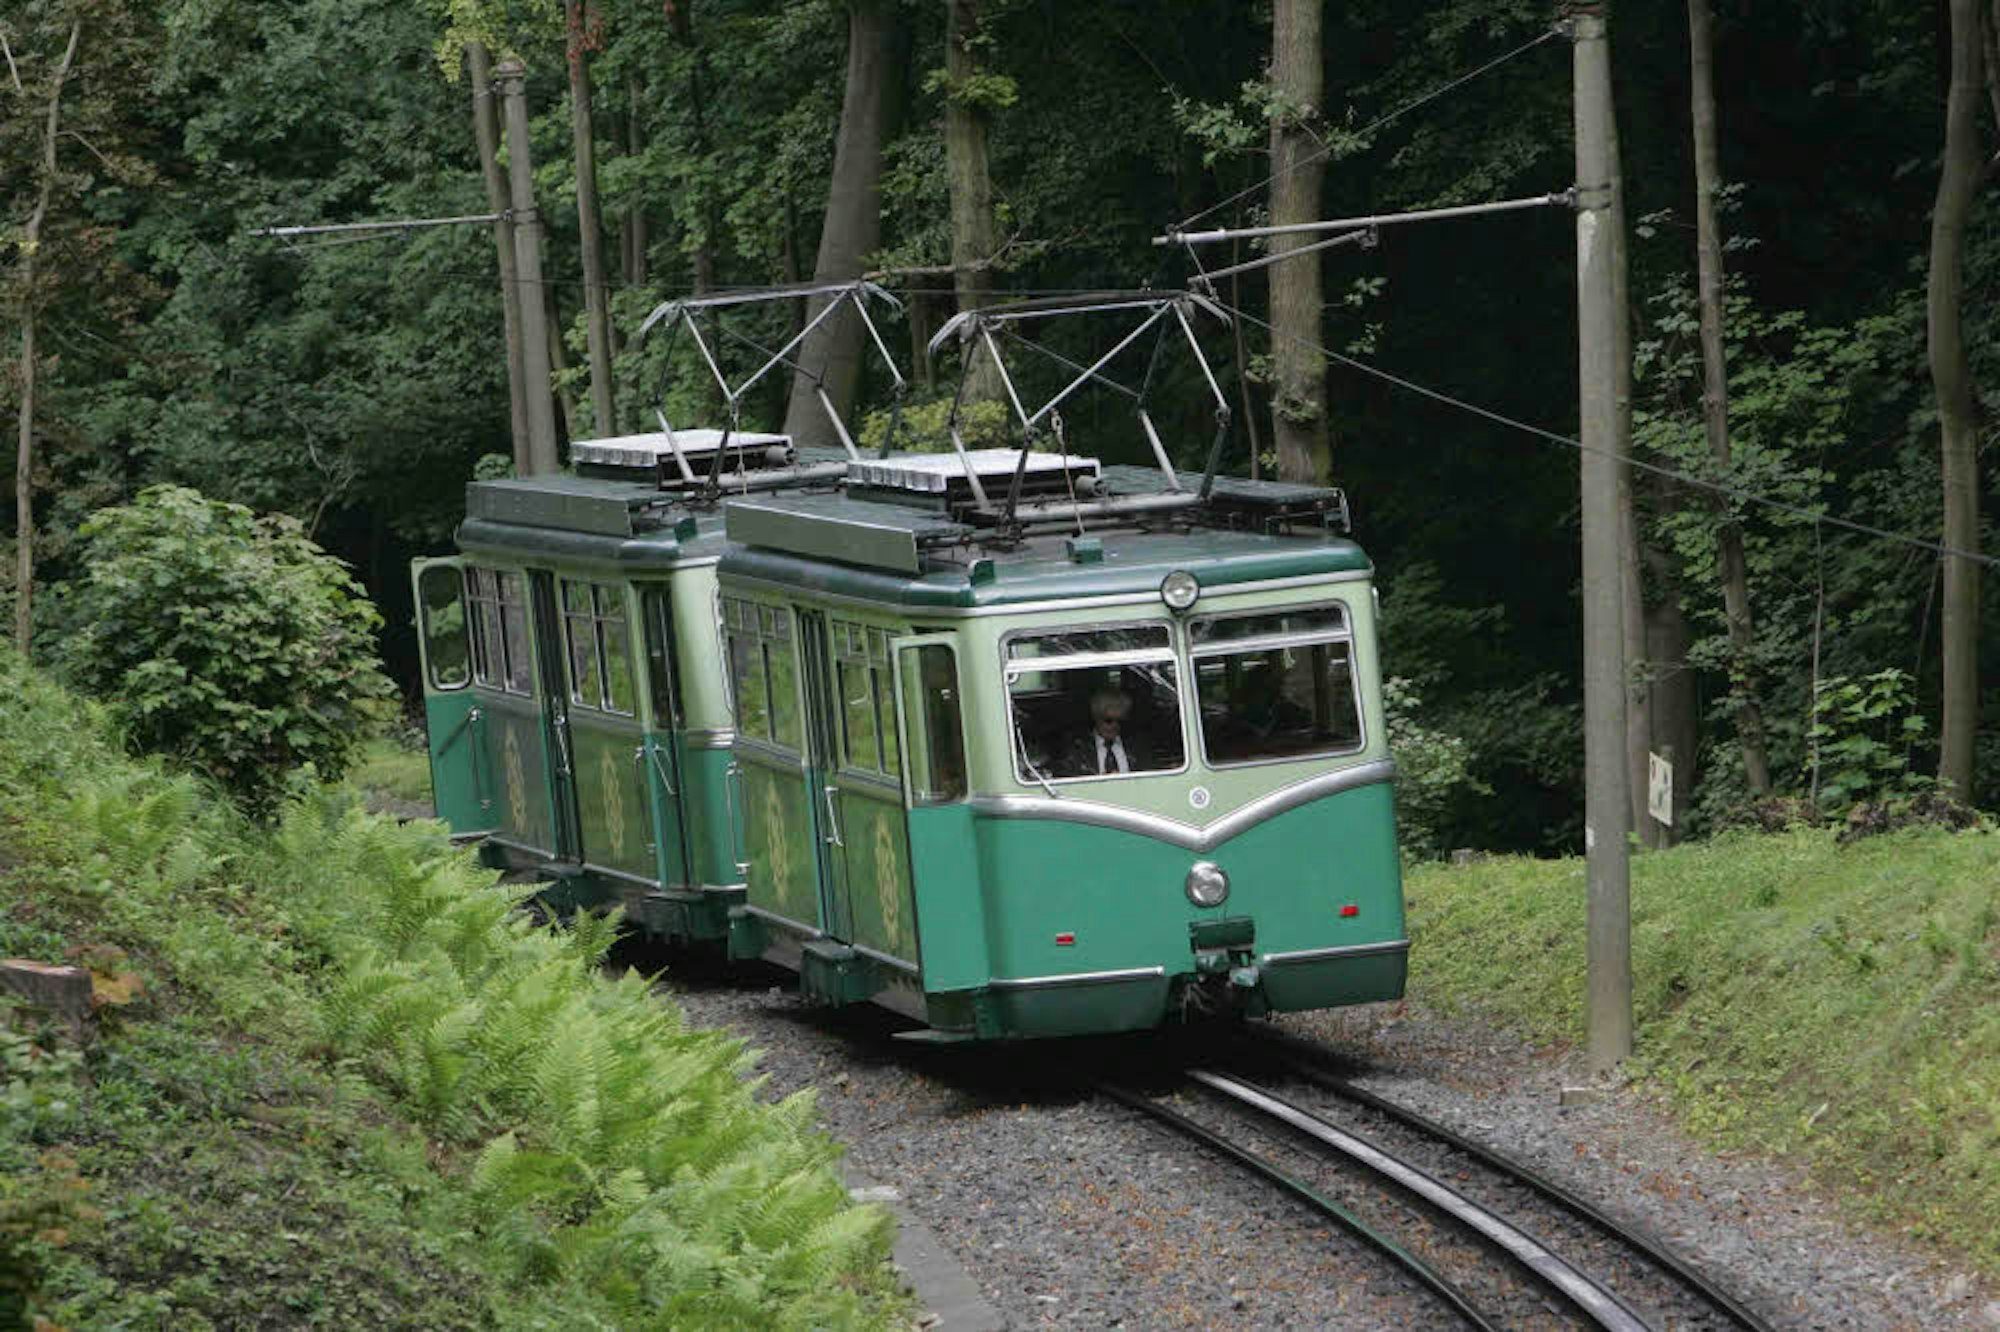 Seit 135 Jahren fährt die Zahnradbahn von Königswinter auf den Drachenfels. Insgesamt hat sie seither – bis auf das eine Unglück vor 60 Jahren immer sicher – rund 35 Millionen Menschen befördert.